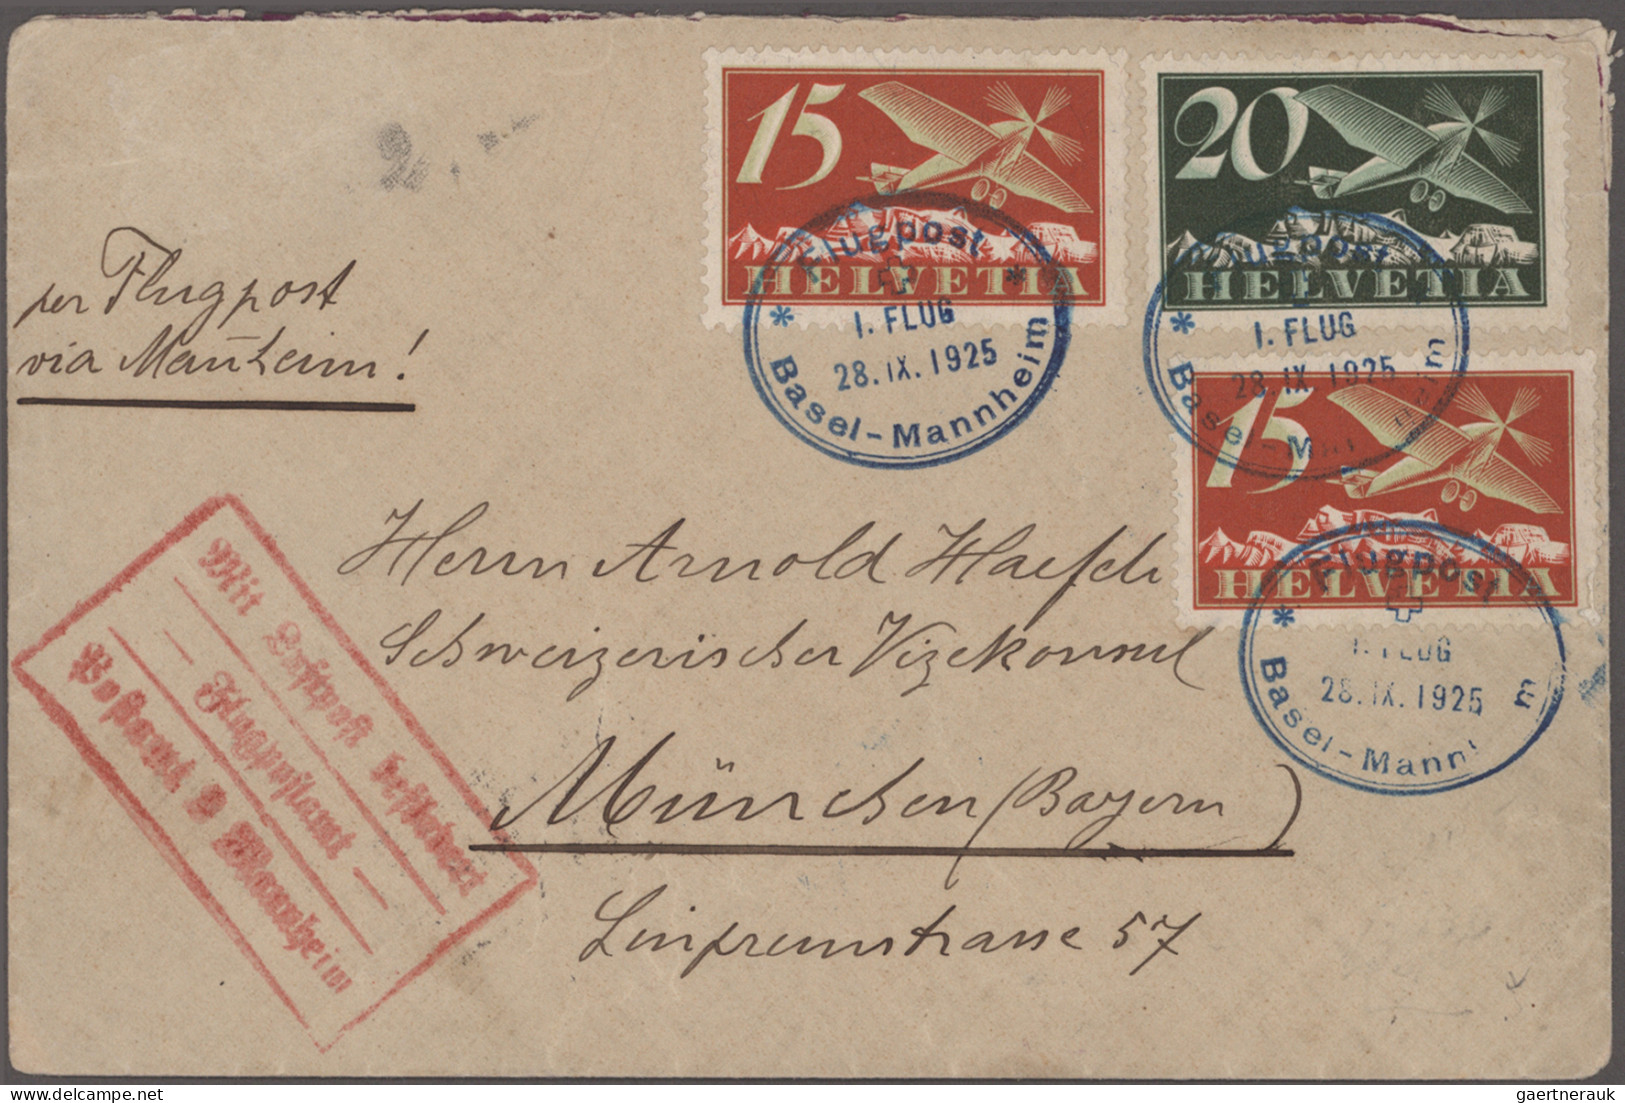 Schweiz: 1925-1957: 12 Luftpostbelege Ab Flugpost Basel-Mannheim 1925, Mit Zeppe - Lotes/Colecciones